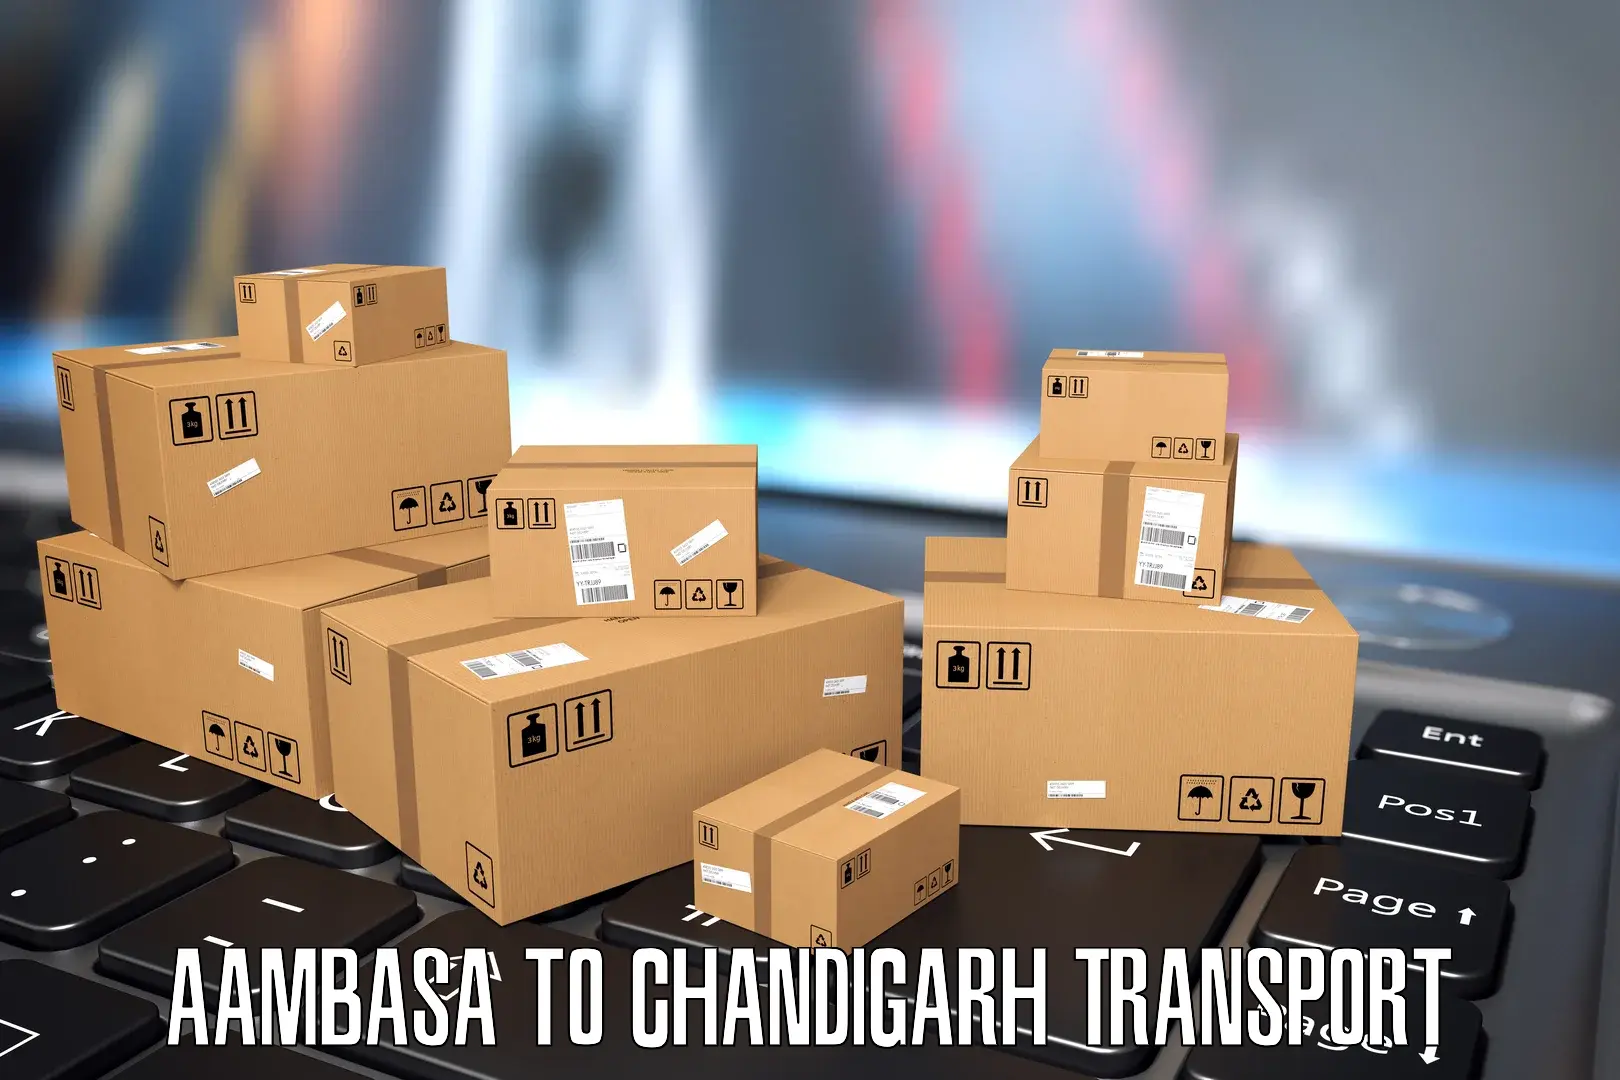 Pick up transport service Aambasa to Chandigarh